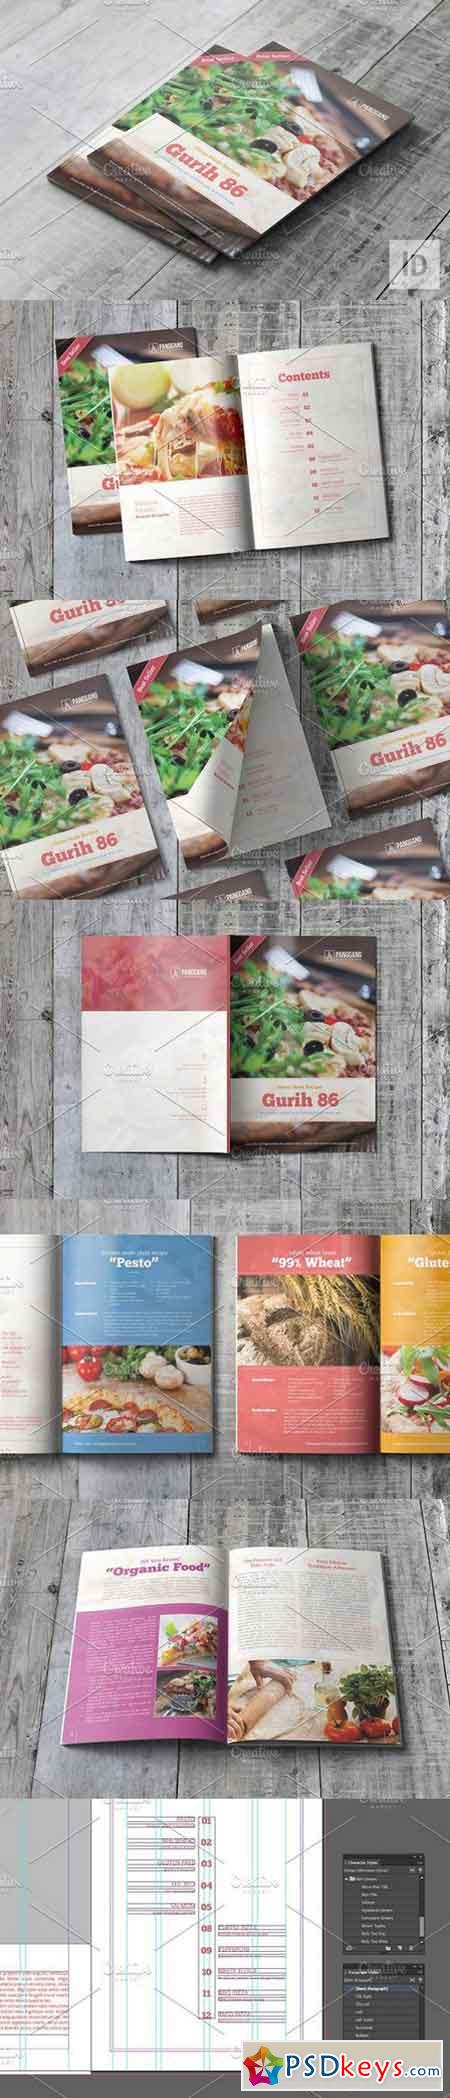 Gurih 86 Recipe Book 788240